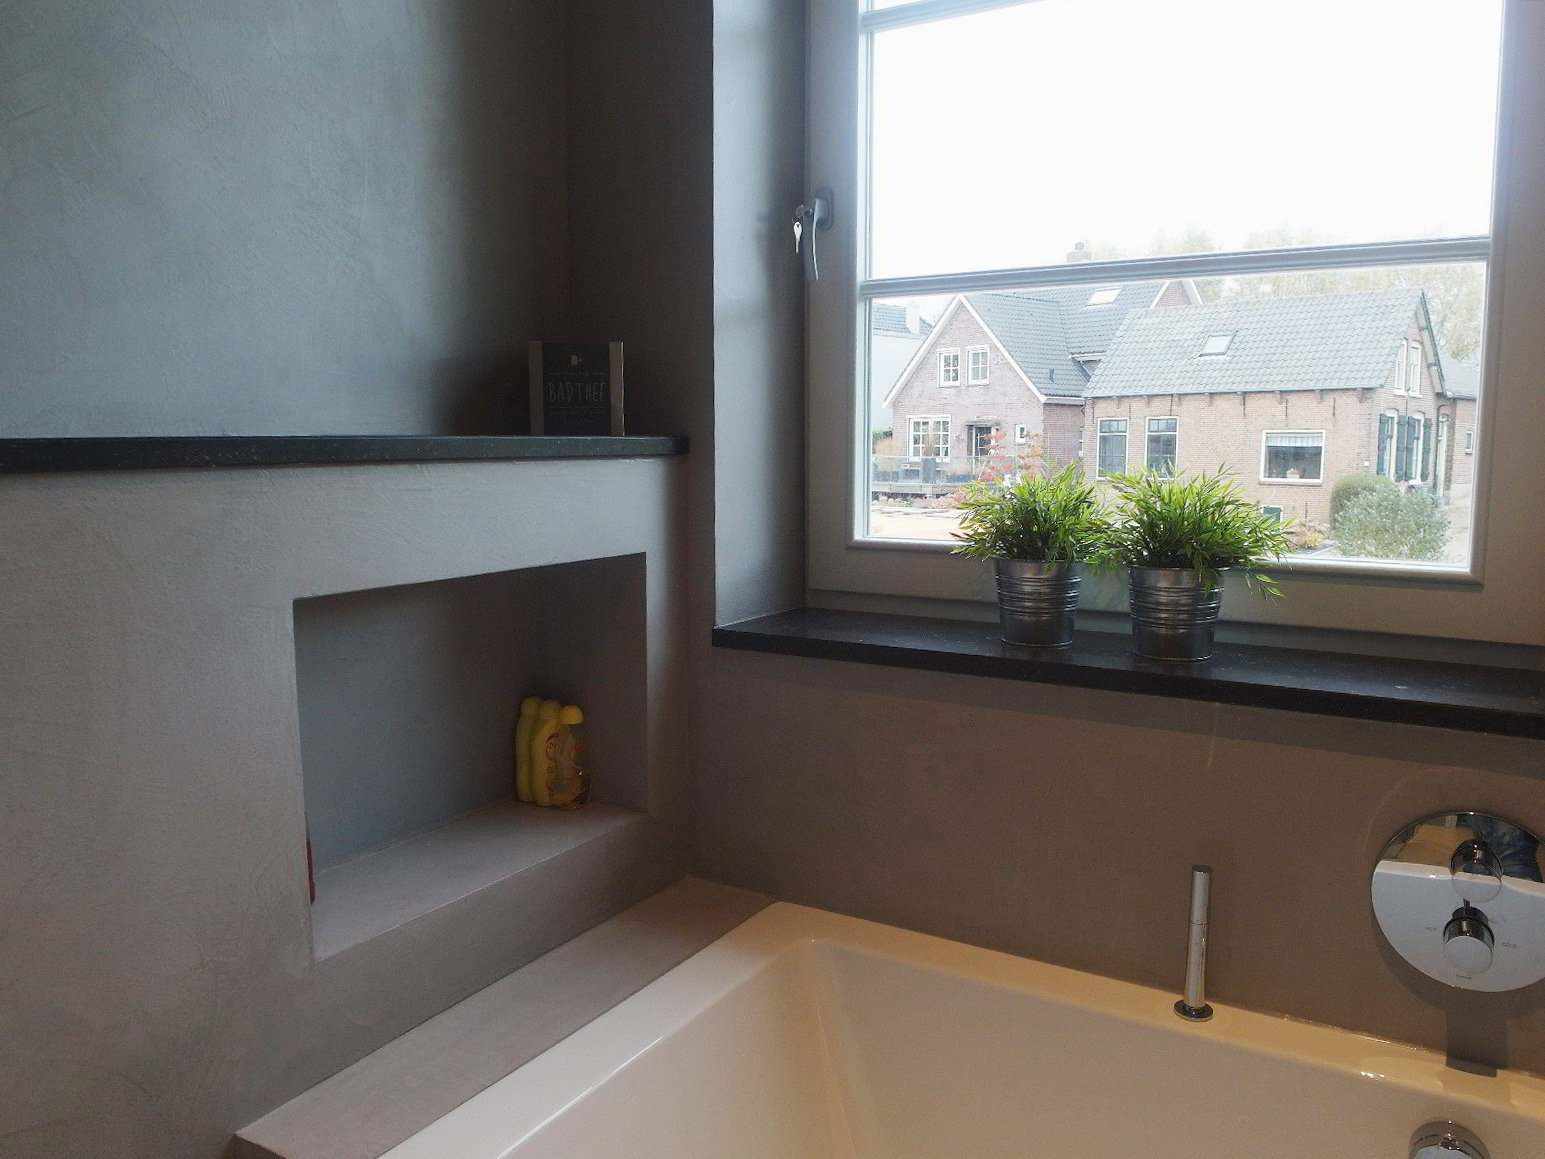 Microcement op de muur, de vloer en het meubilair van een badkamer in Nederland in het Decas-project.